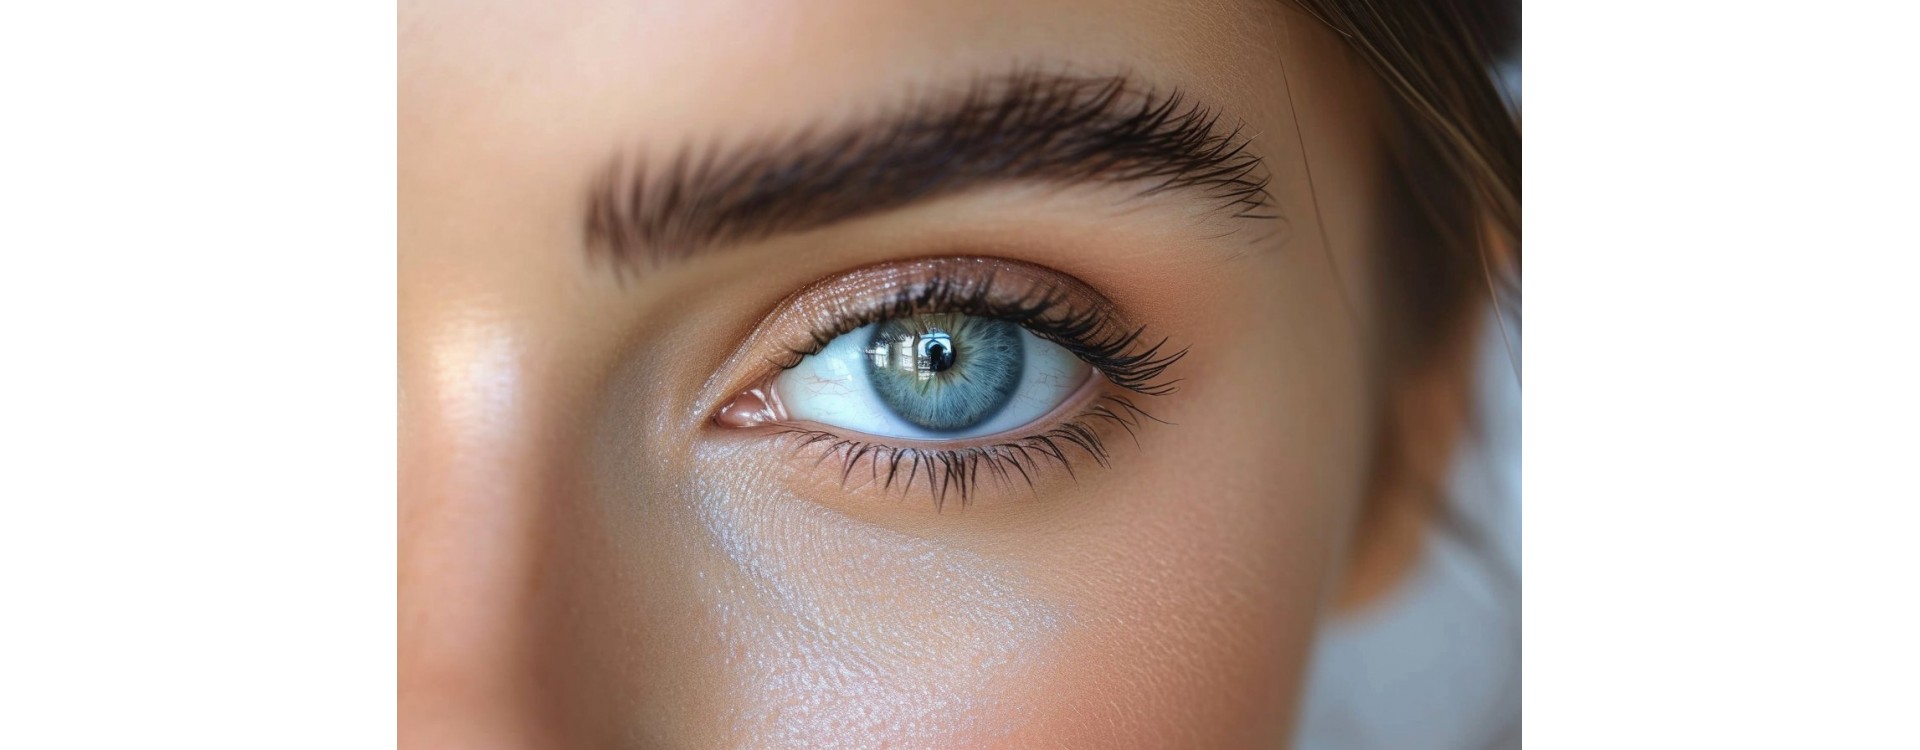 Les secrets pour faire repousser vos sourcils efficacement